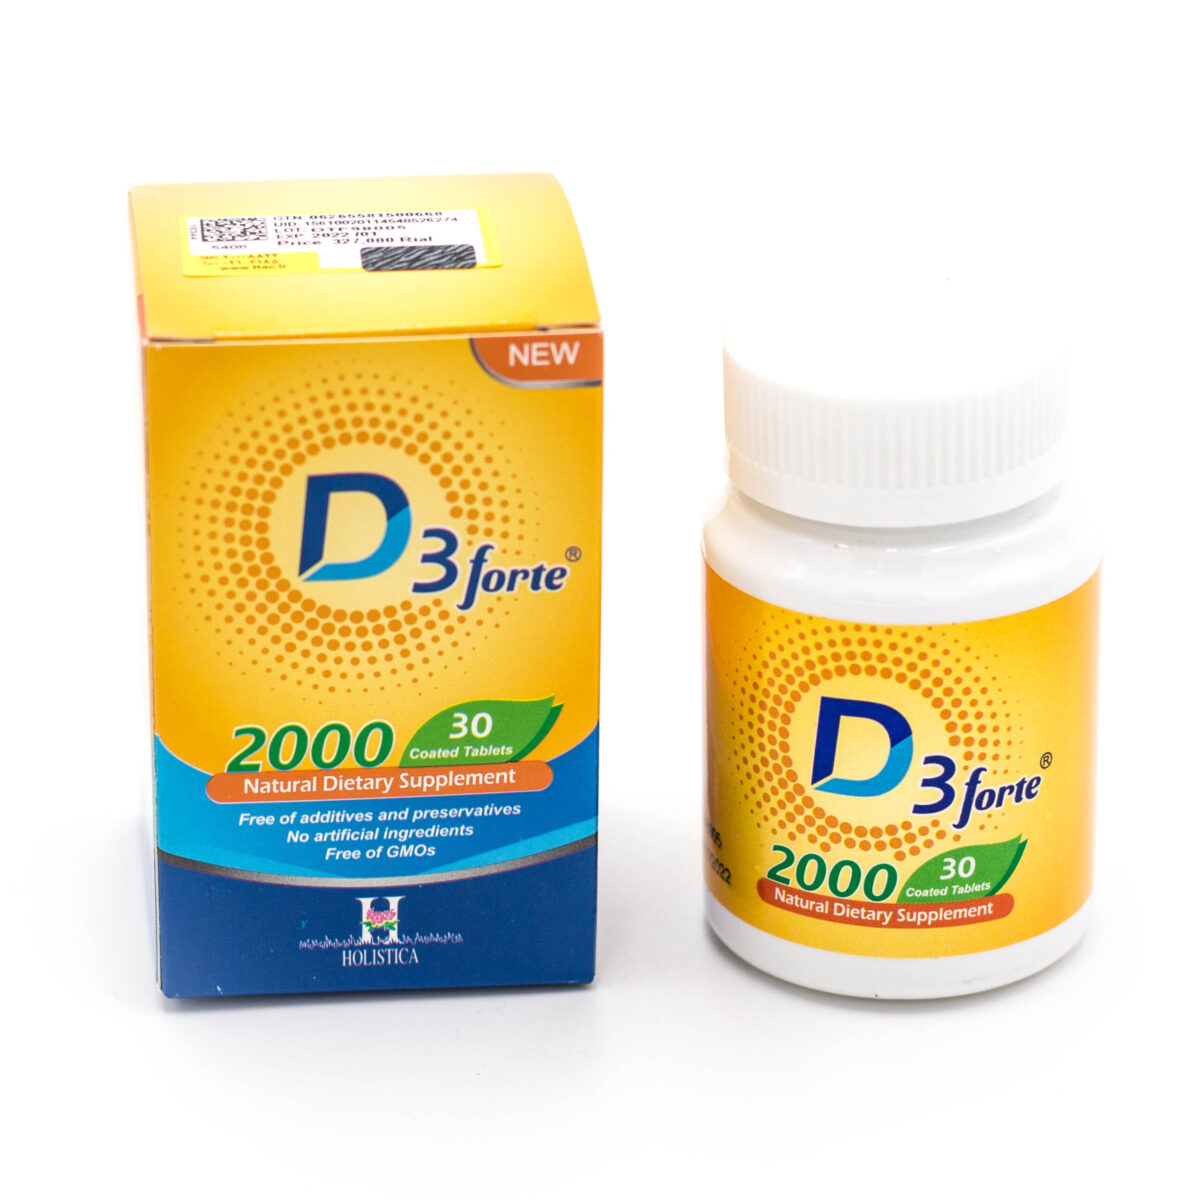 قرص ویتامین د3 فورت هولیستیکا Vitamin D3 Forte